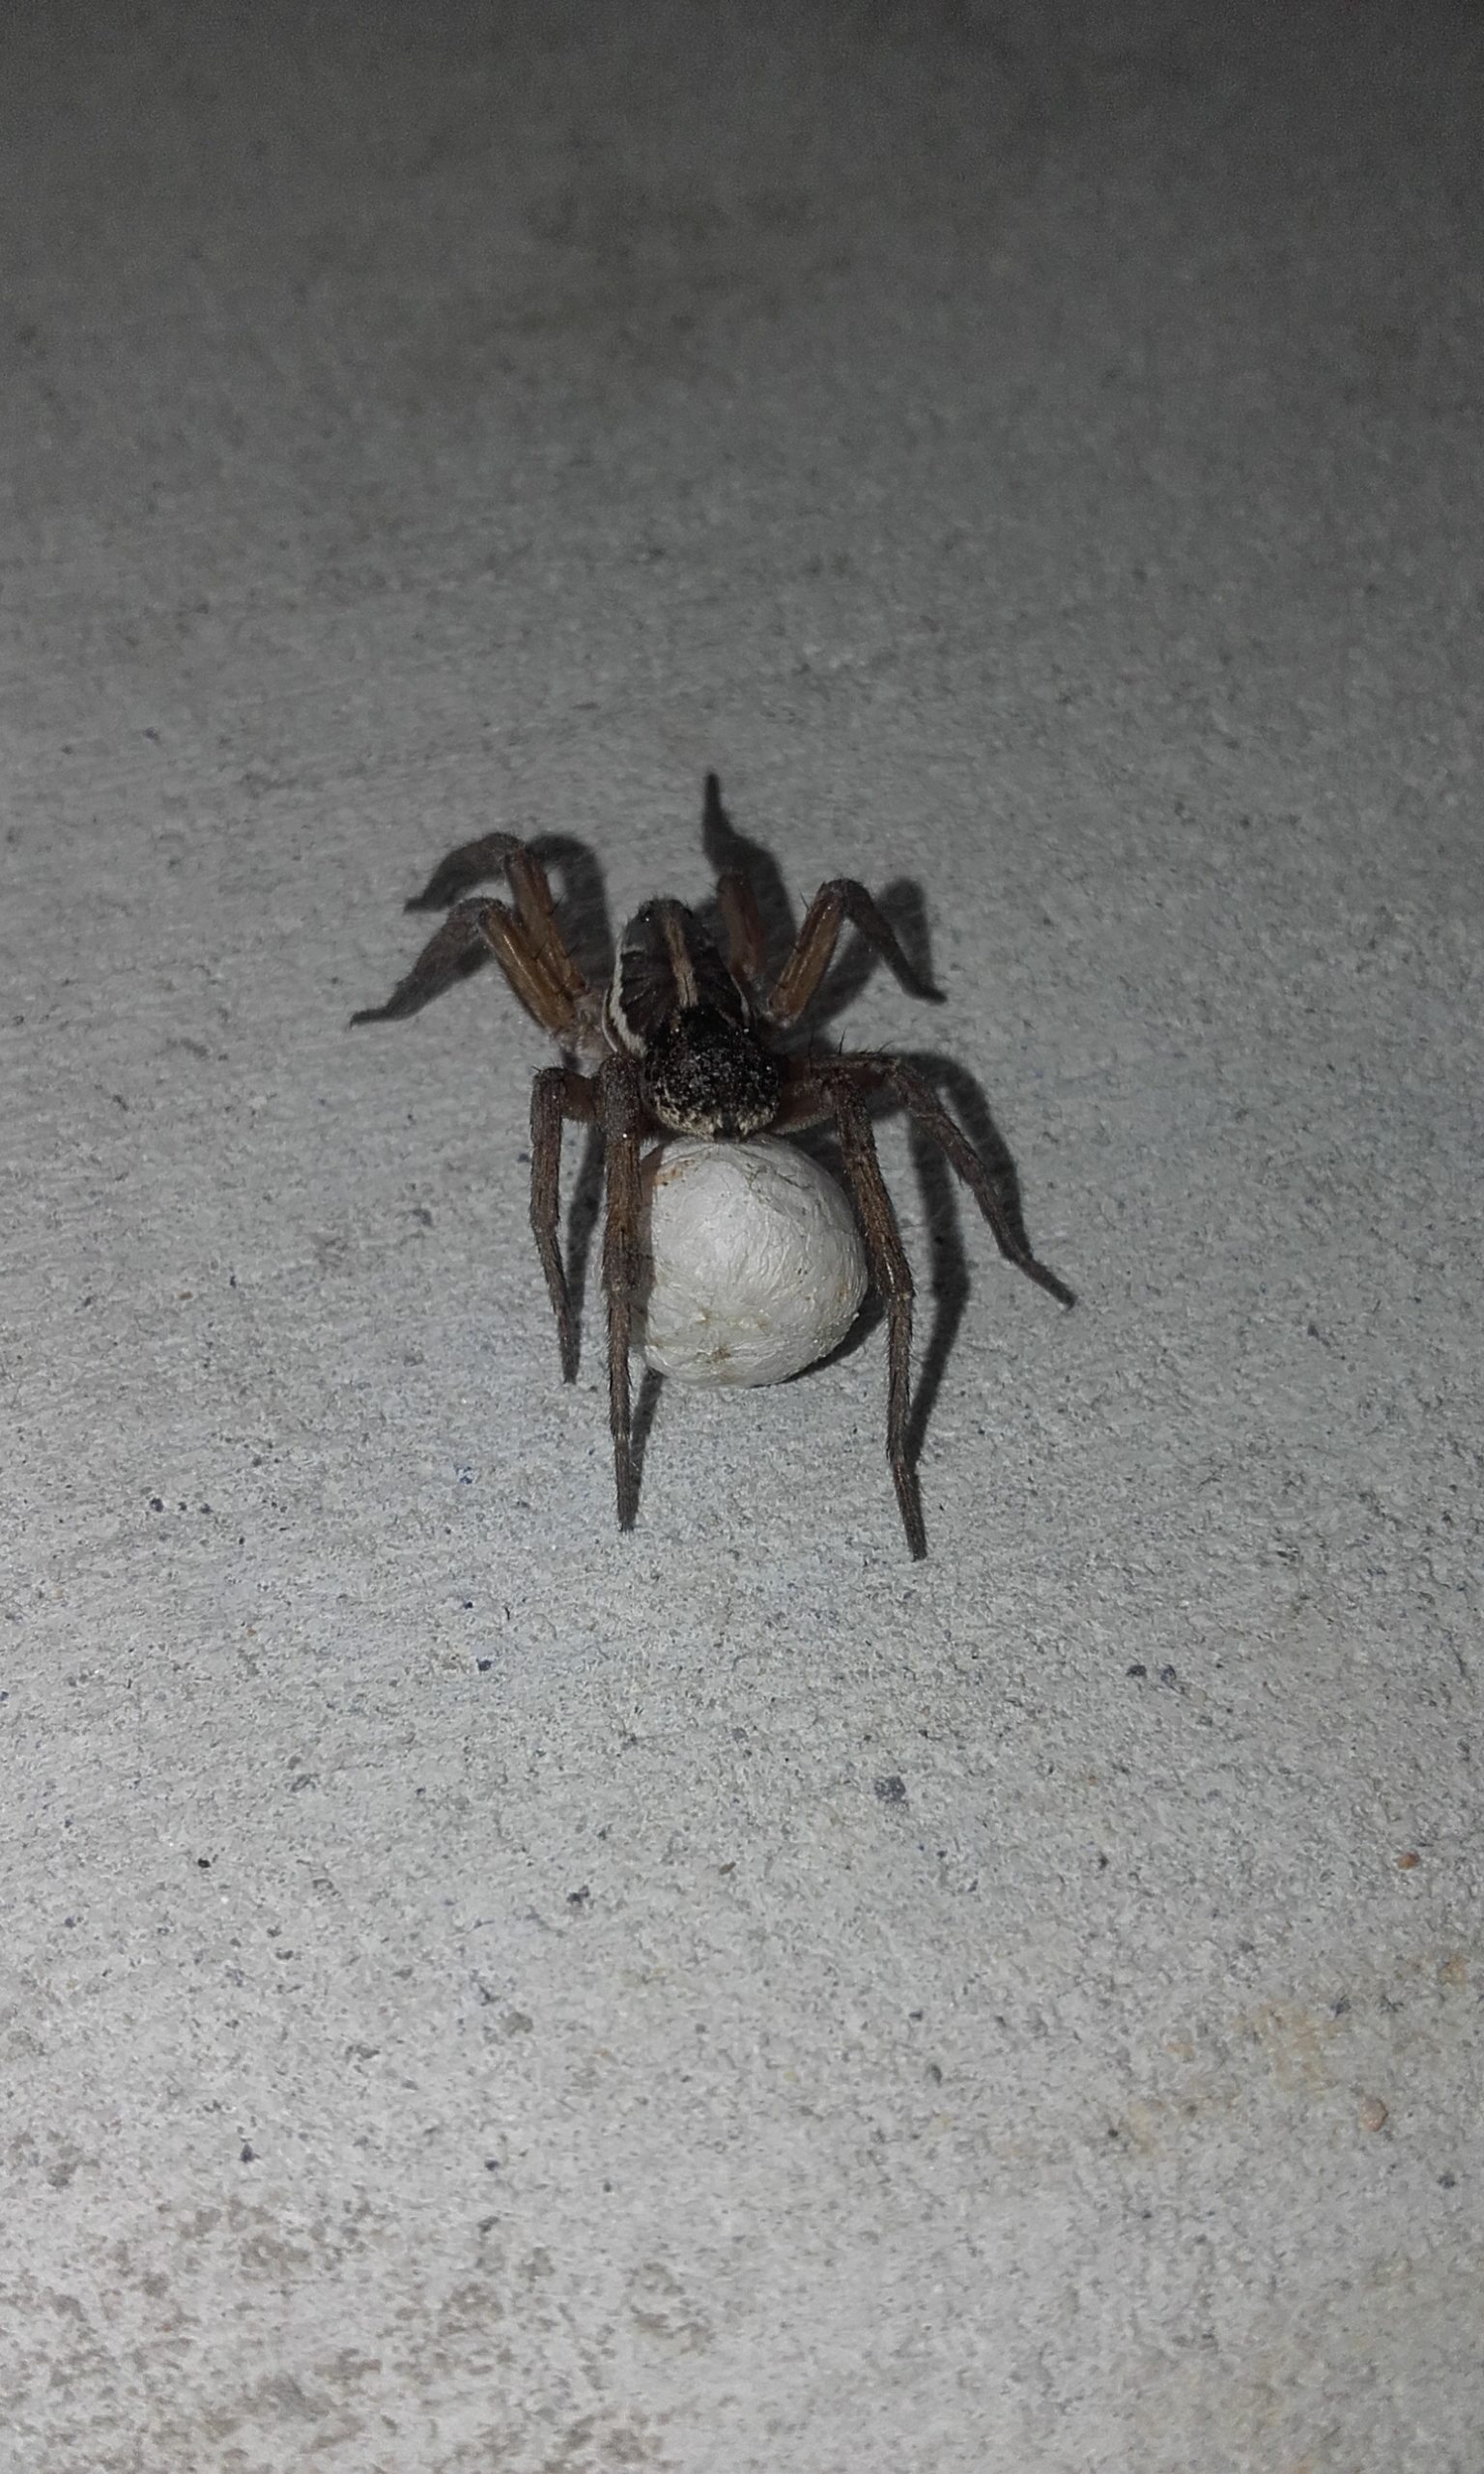 Huntsman spider with egg sack